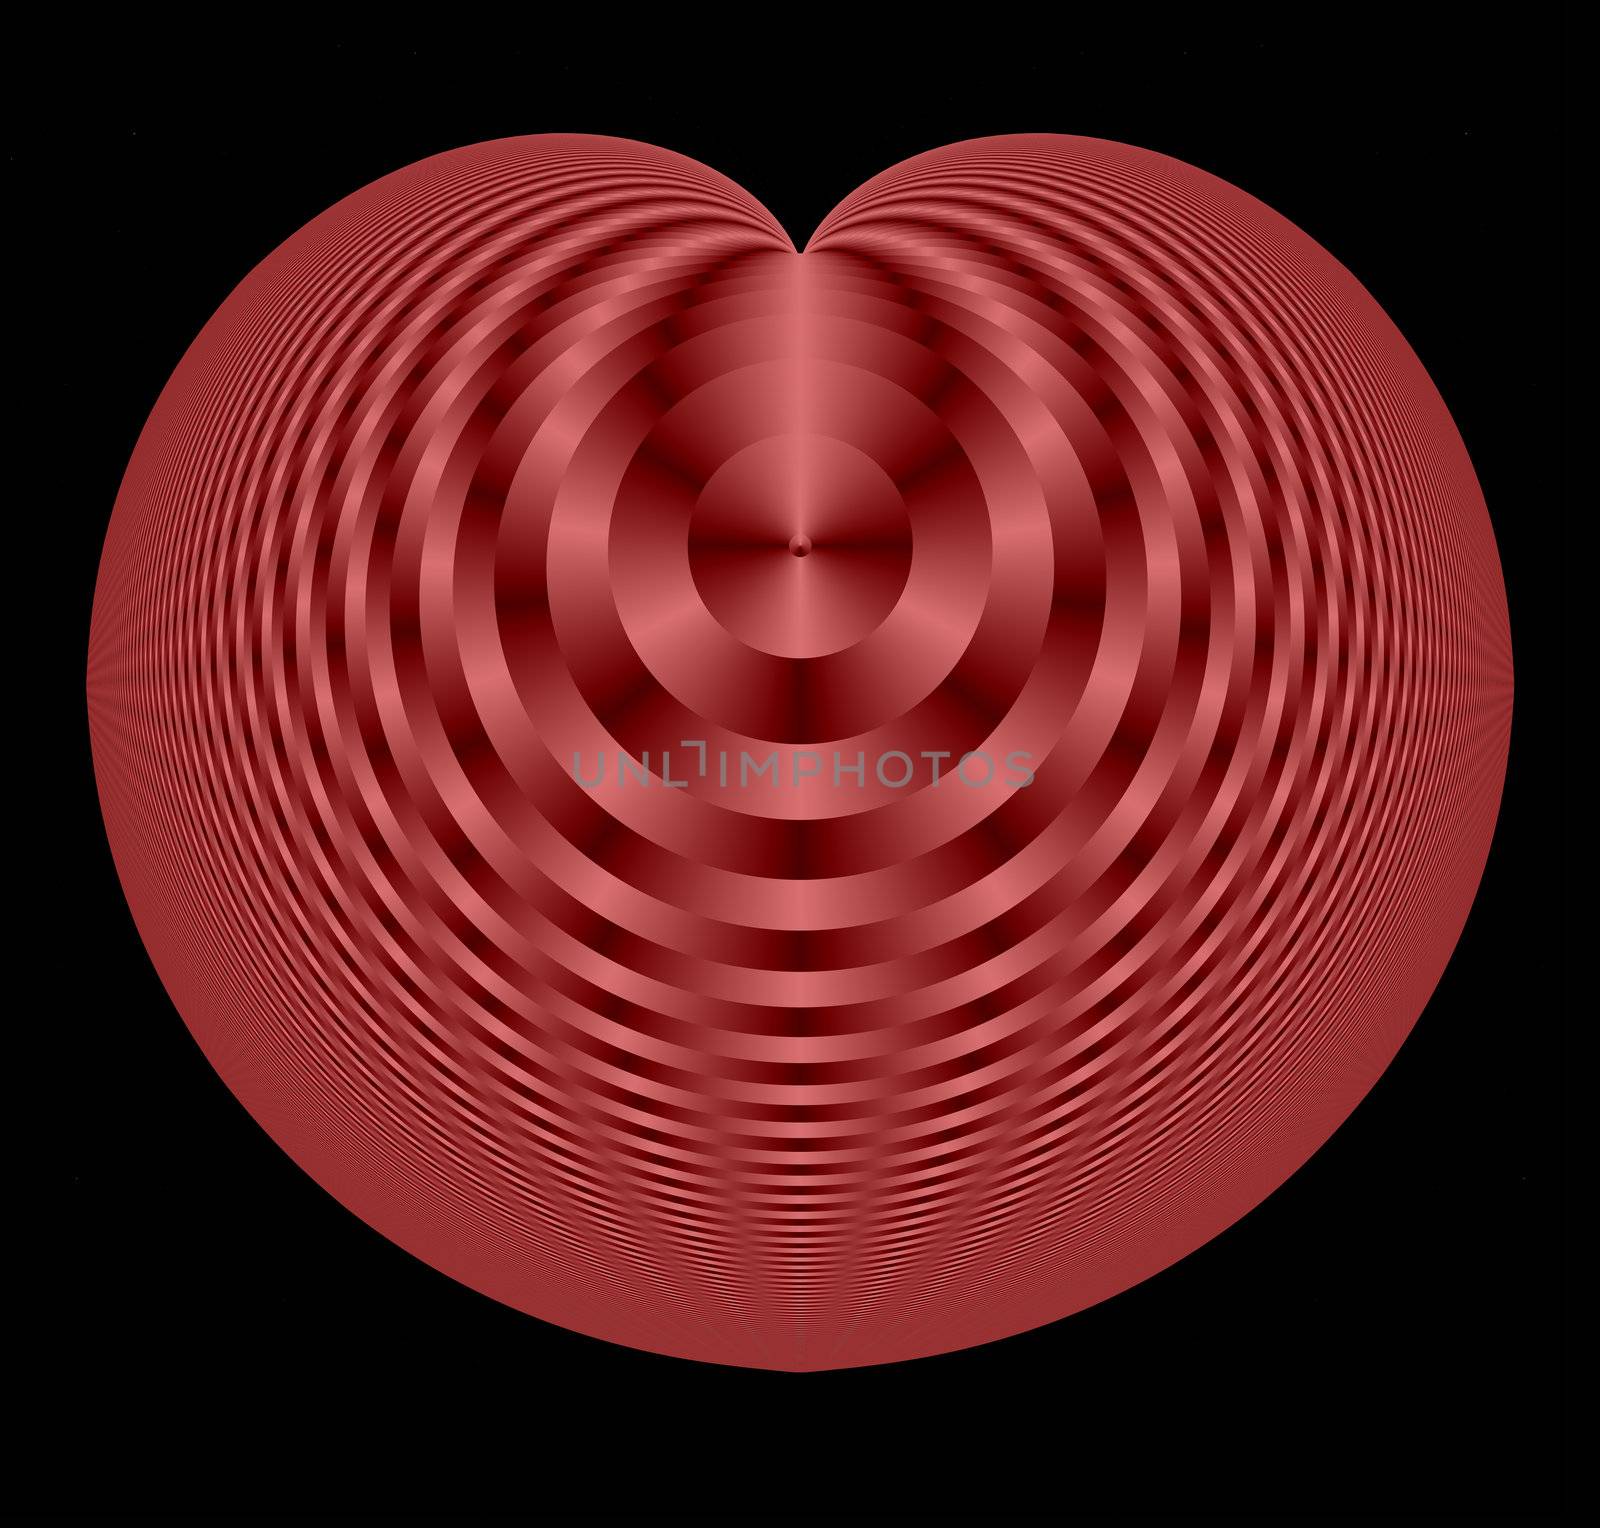 A stylized heart.